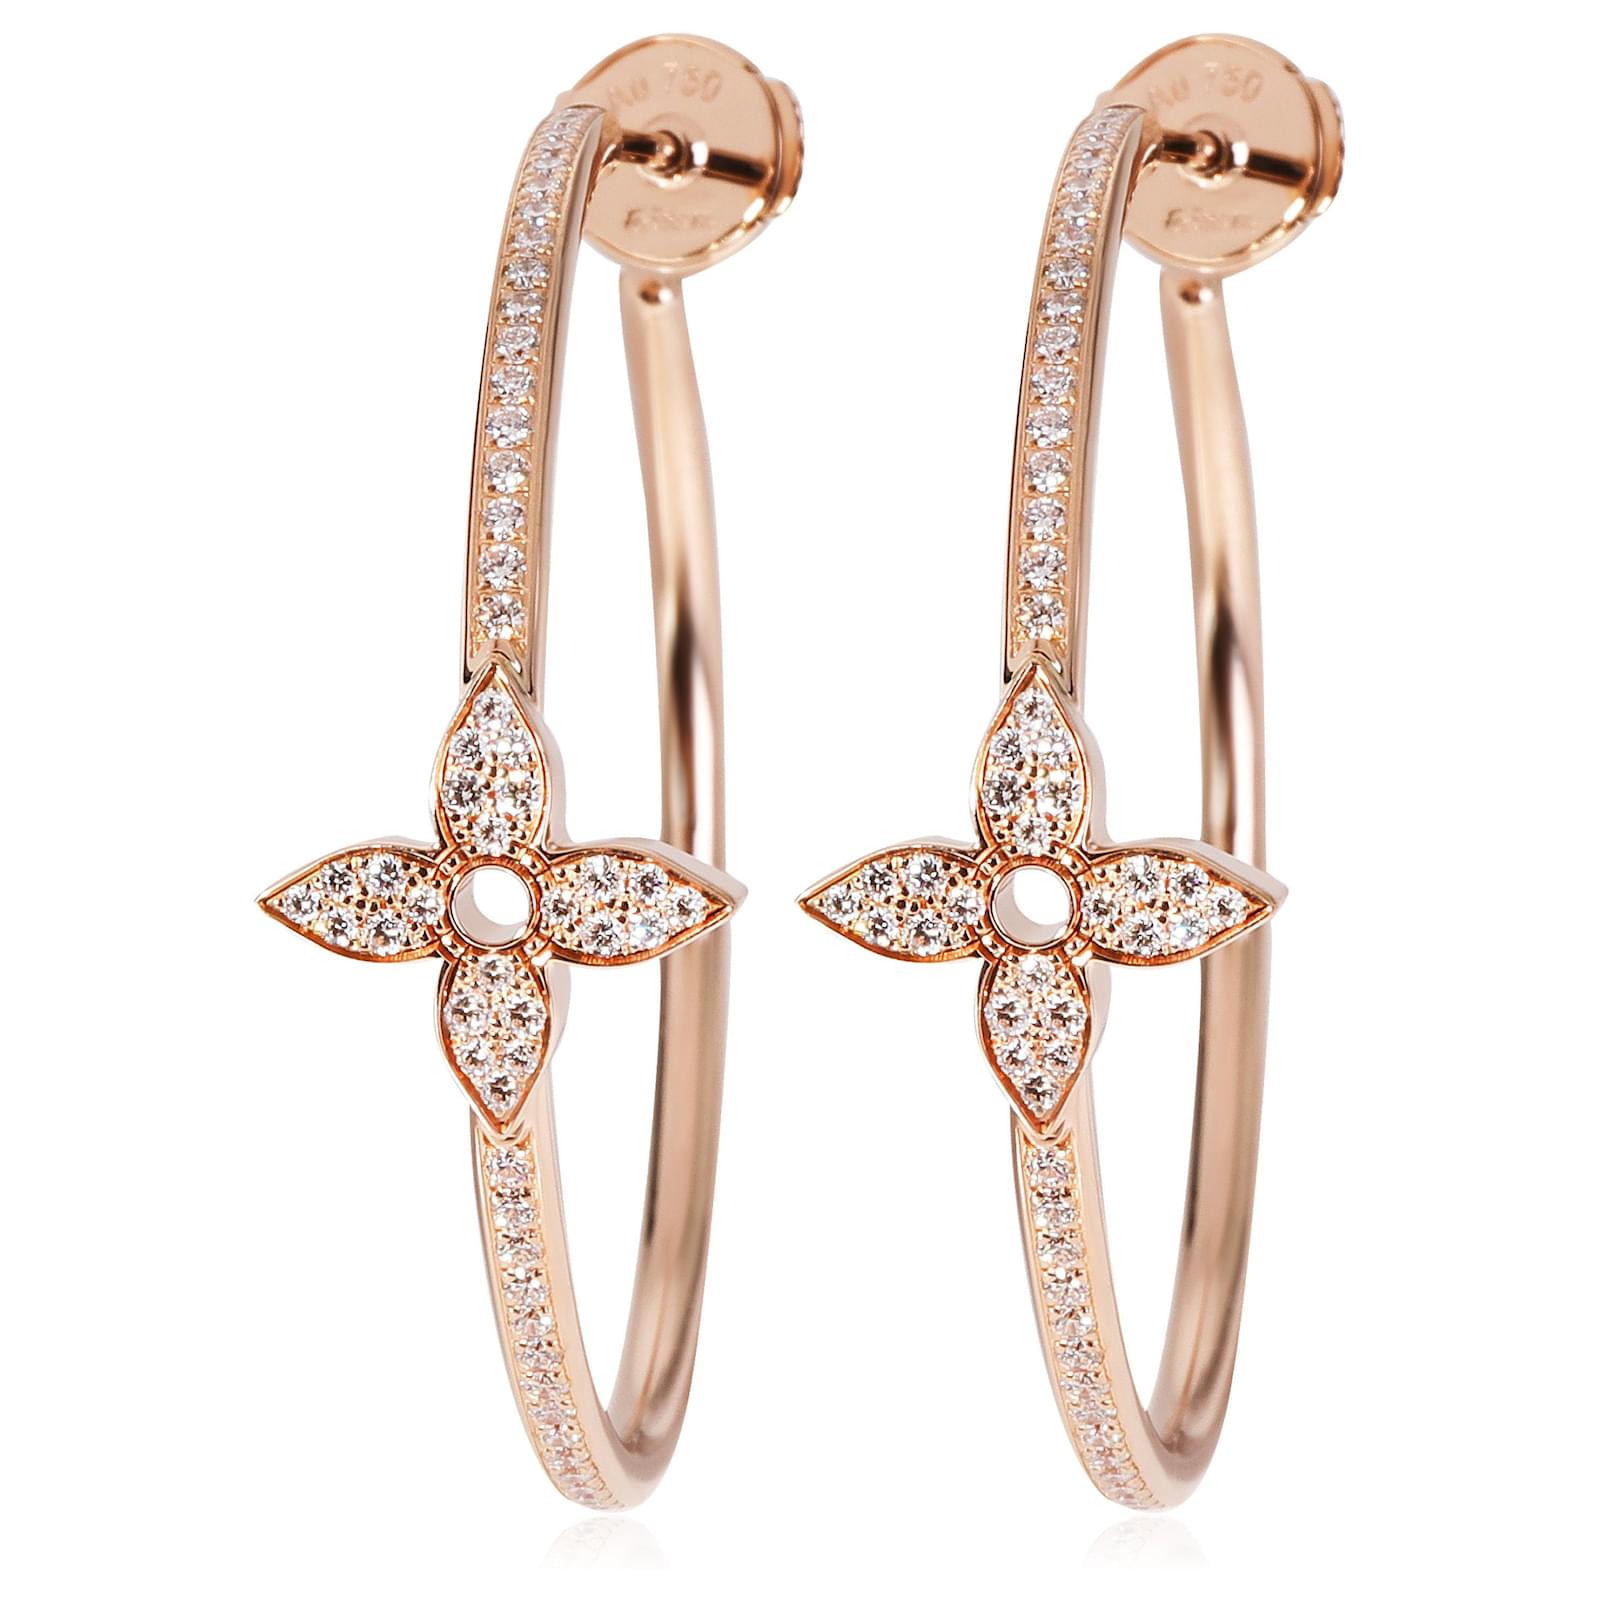 Louis Vuitton Idylle Blossom LV Single Ear Stud Earring Earrings